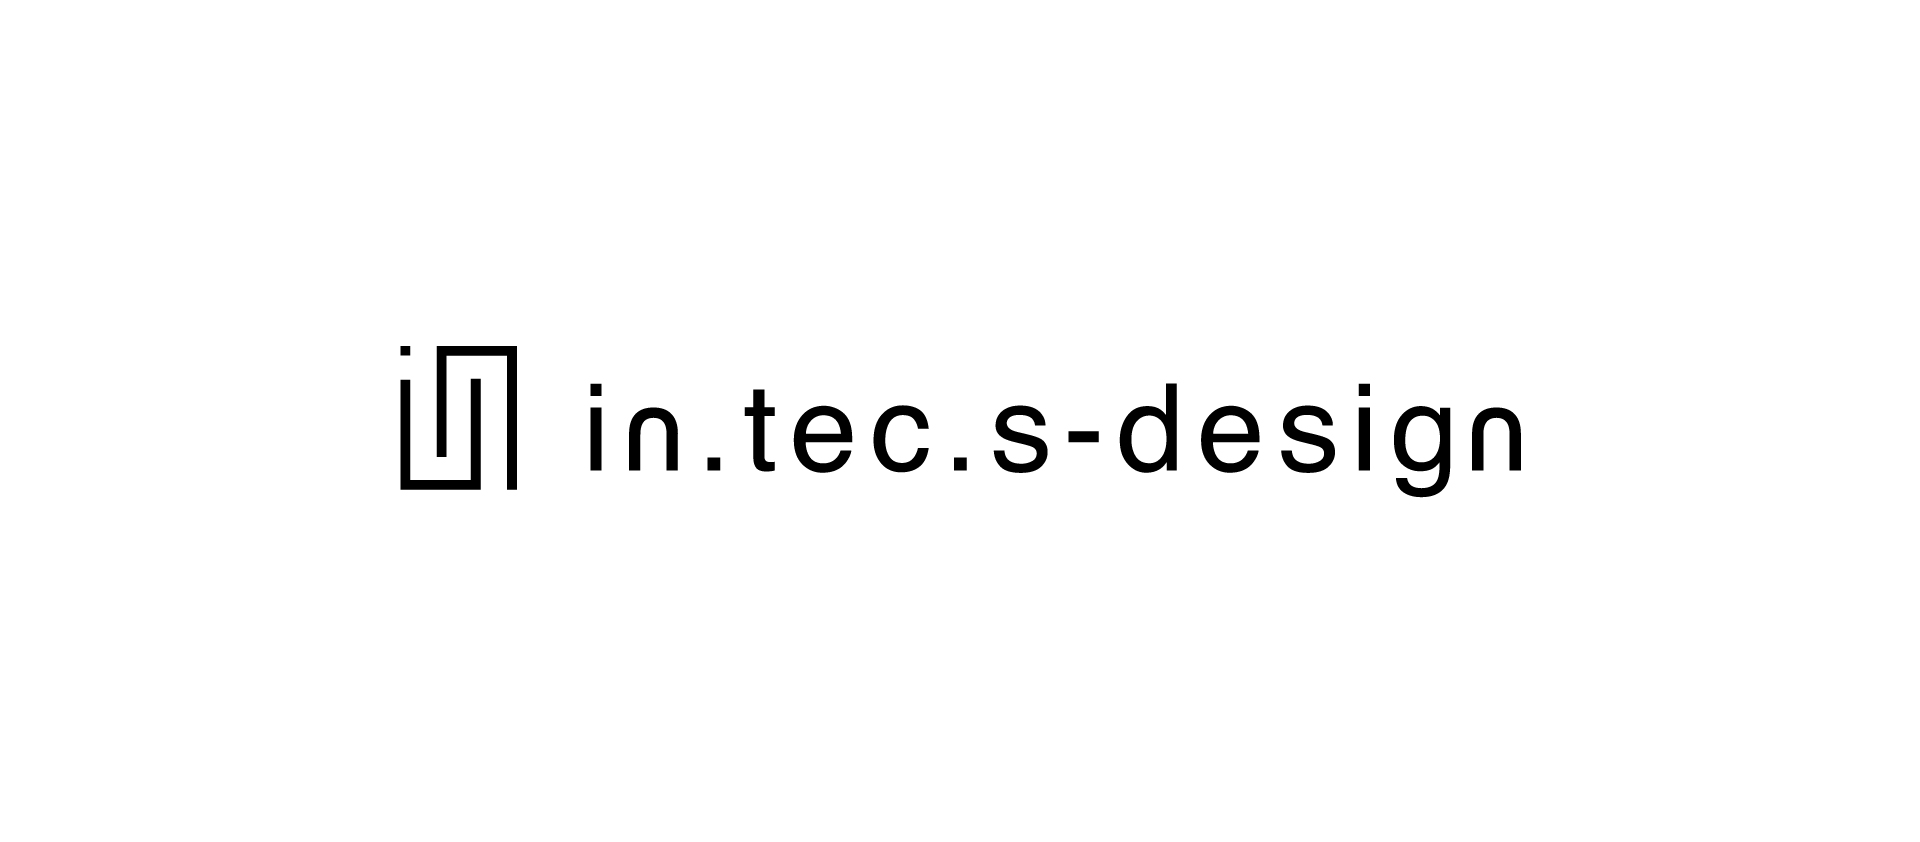 ロゴ- in.tec.s-designの画像